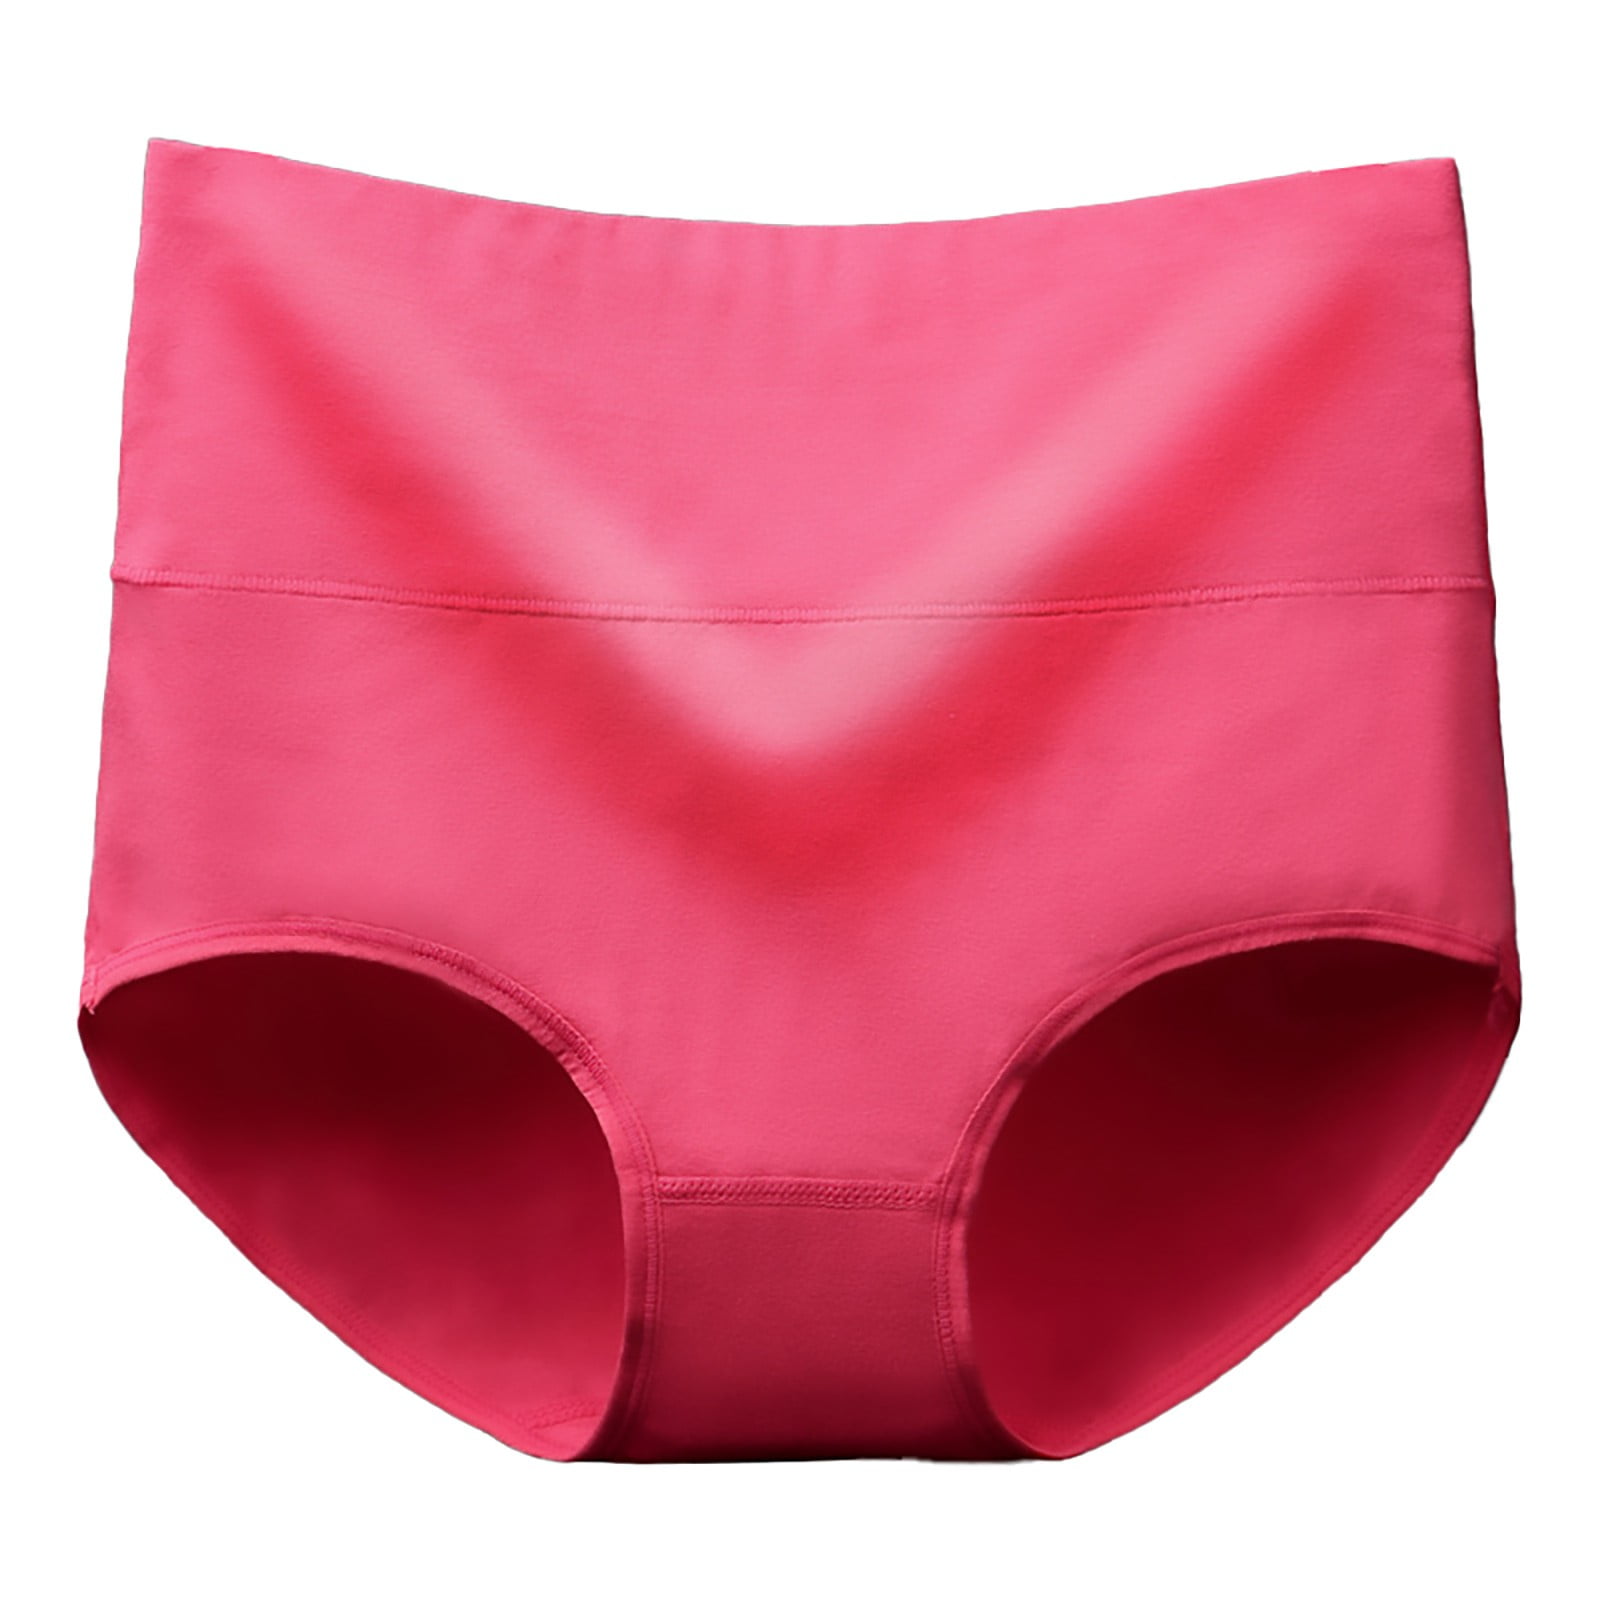 eczipvz Womens Underwear Cotton Women's Fashion Low Waist Underwear Color  Striped Briefs Underwear Women Panties B,One Size